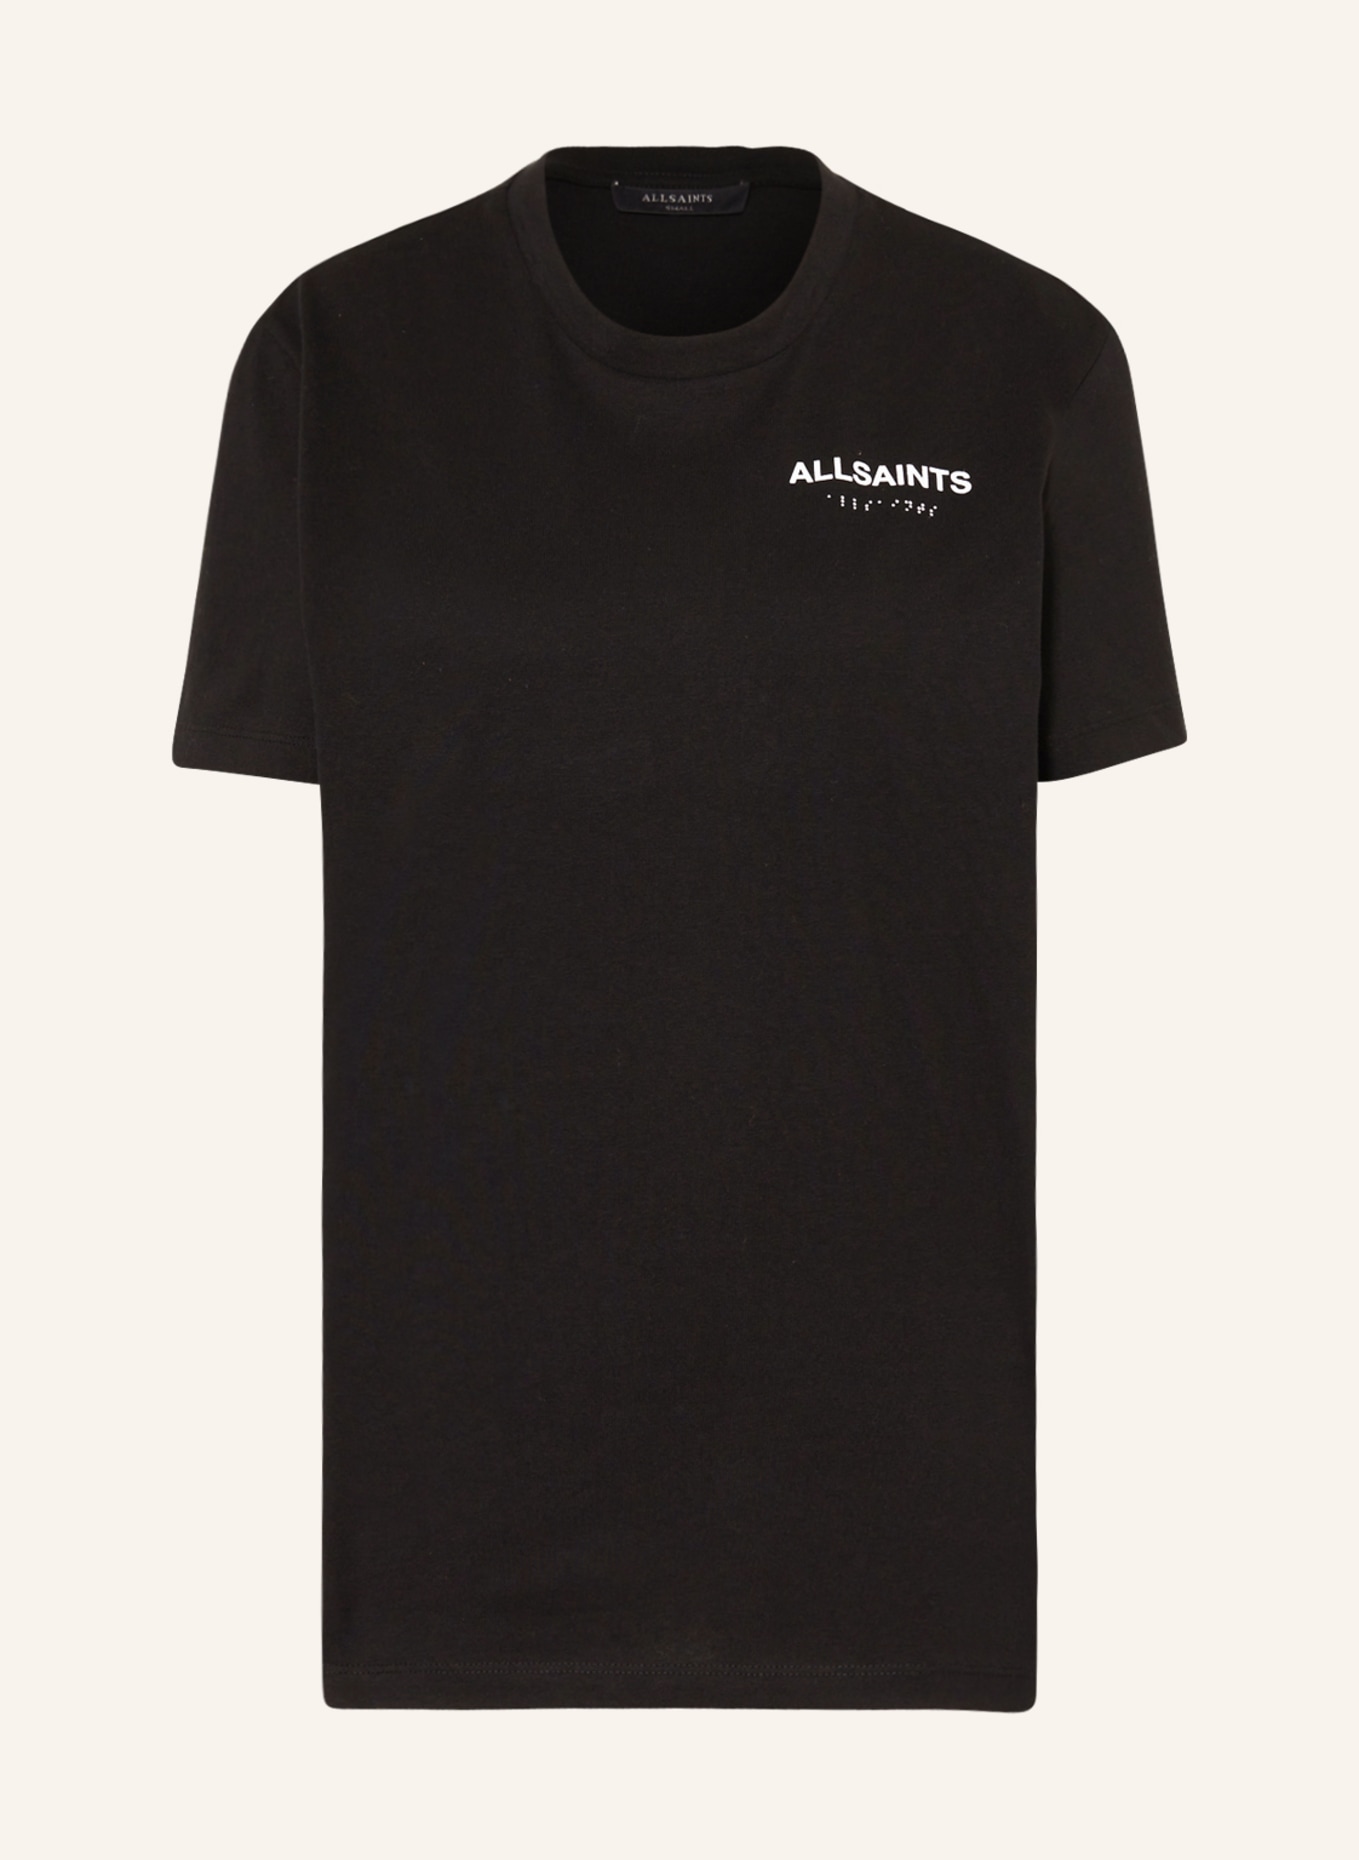 ALLSAINTS T-Shirt BRYN, Farbe: SCHWARZ/ WEISS (Bild 1)